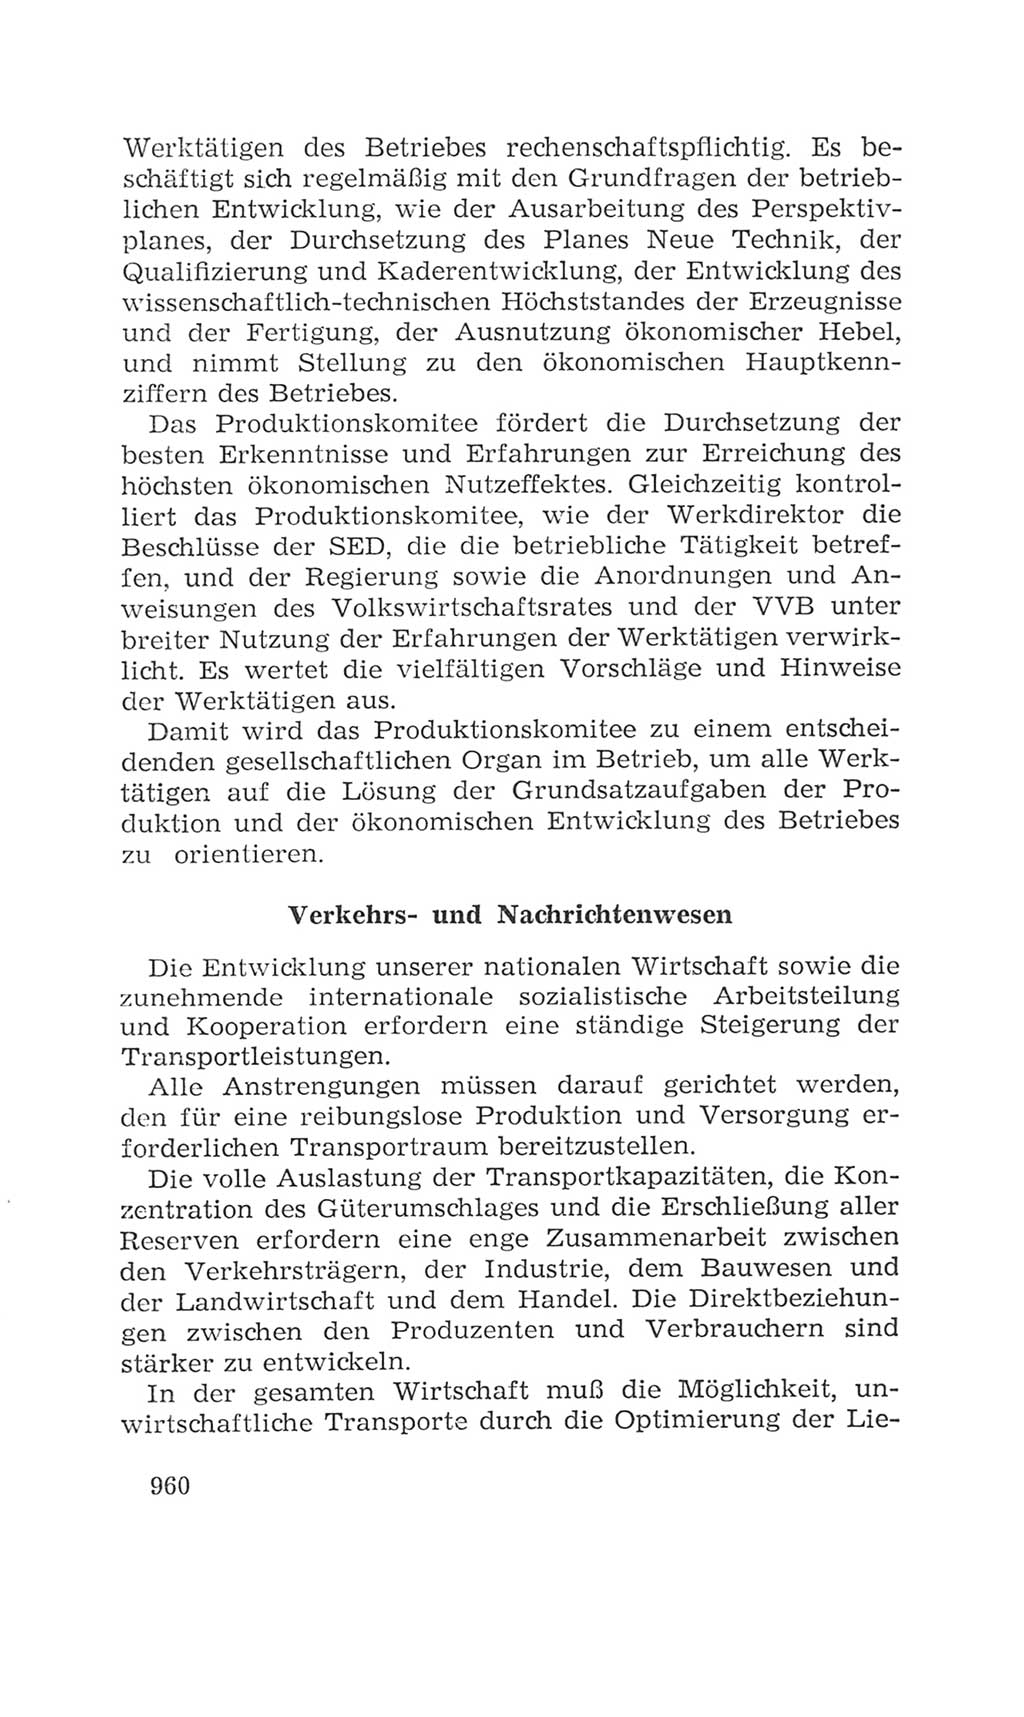 Volkskammer (VK) der Deutschen Demokratischen Republik (DDR), 4. Wahlperiode 1963-1967, Seite 960 (VK. DDR 4. WP. 1963-1967, S. 960)